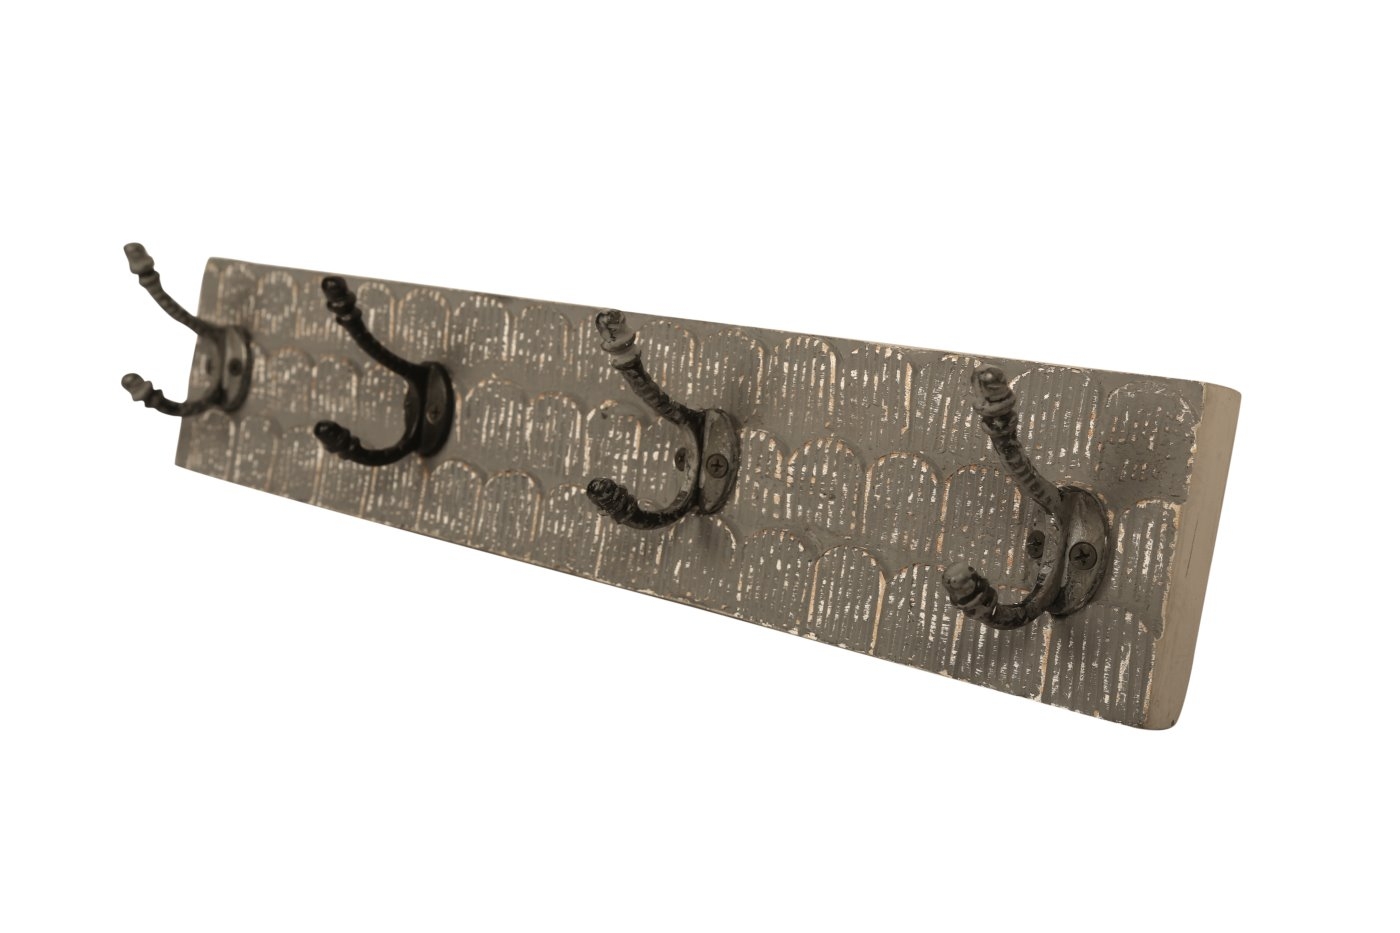 bhp Wandgarderobe aus Holz braungrau gemustert mit 4 Metallhaken-Front geschnitzt unter Haken und Hakenleisten > Garderoben > bhp